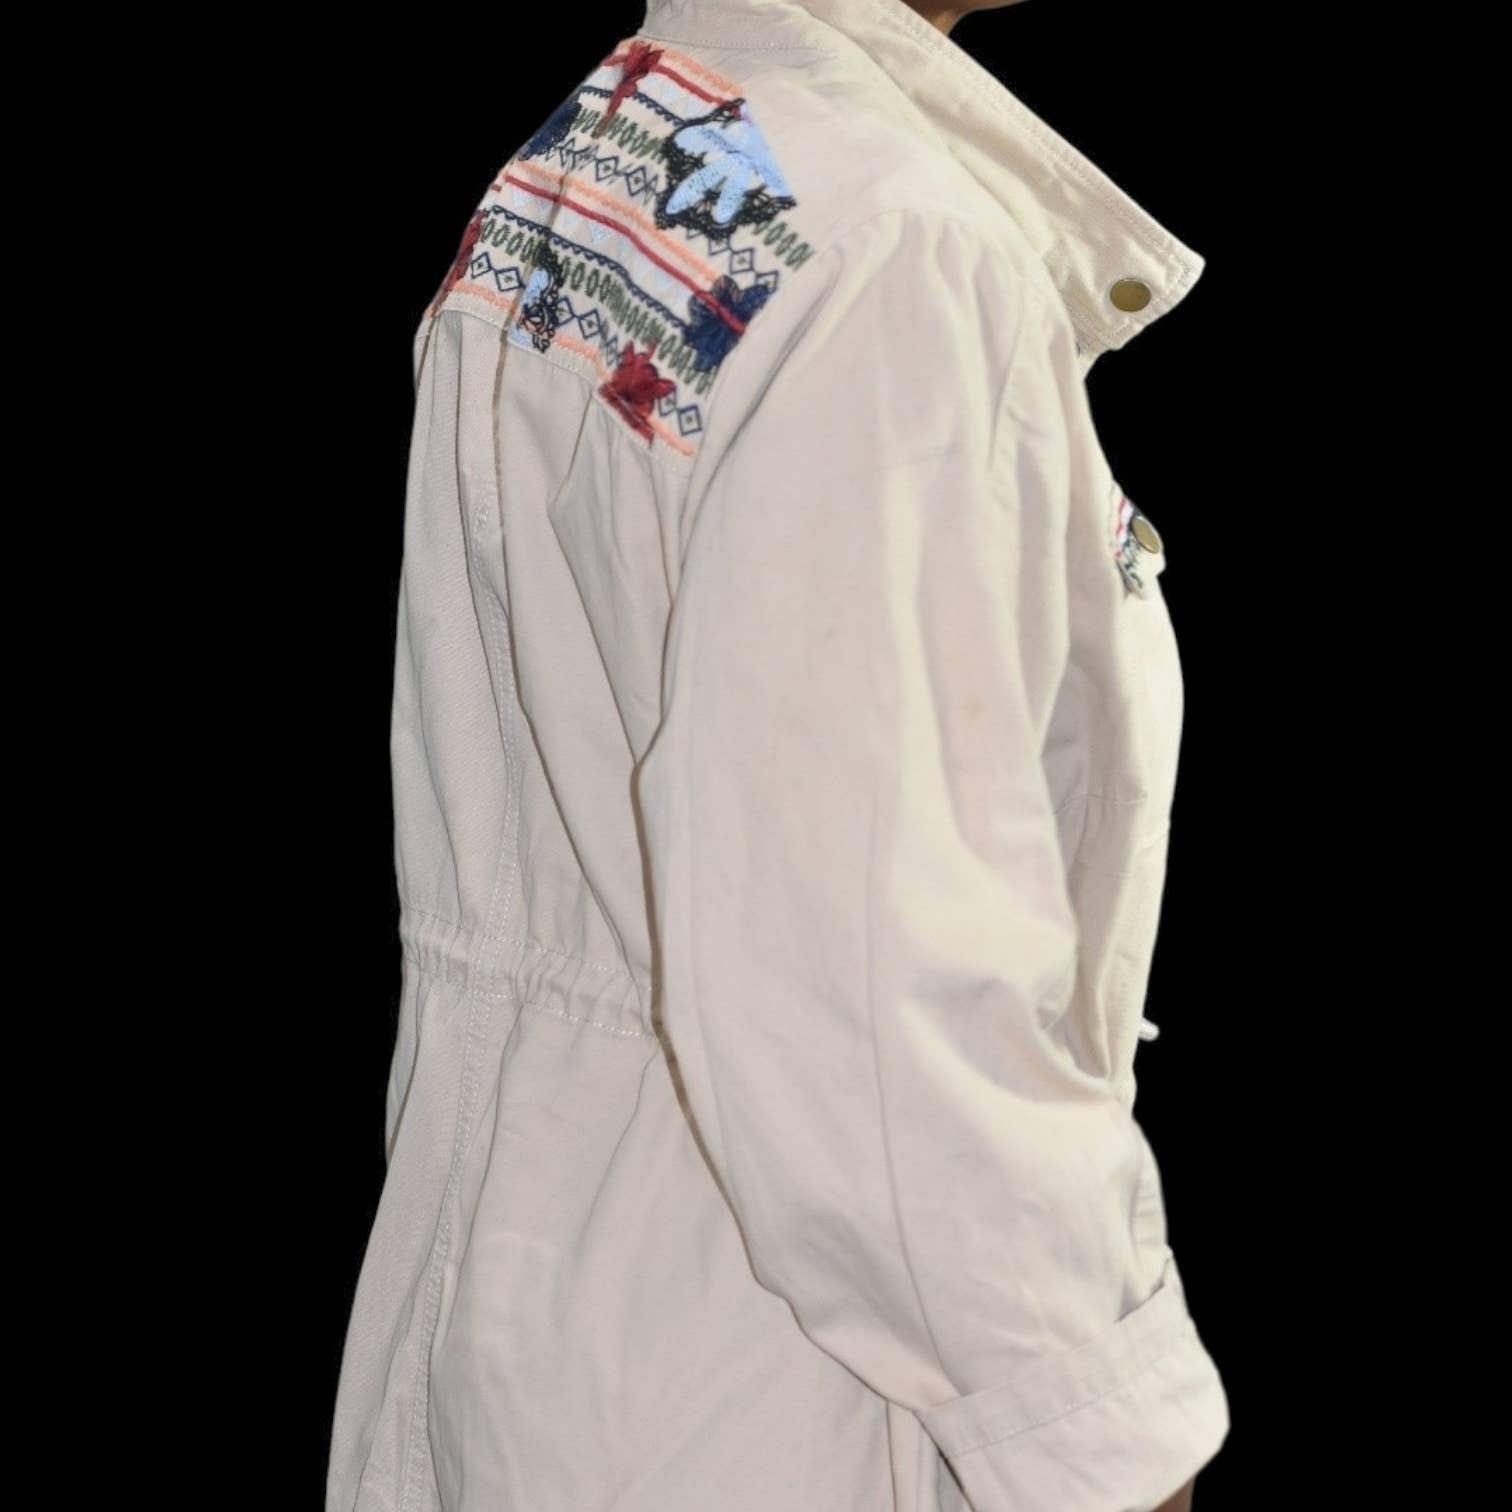 Monroe Main Embroidered Utility Jacket Tan Khaki Canvas Field Cargo Drawstring Plus Size 1X